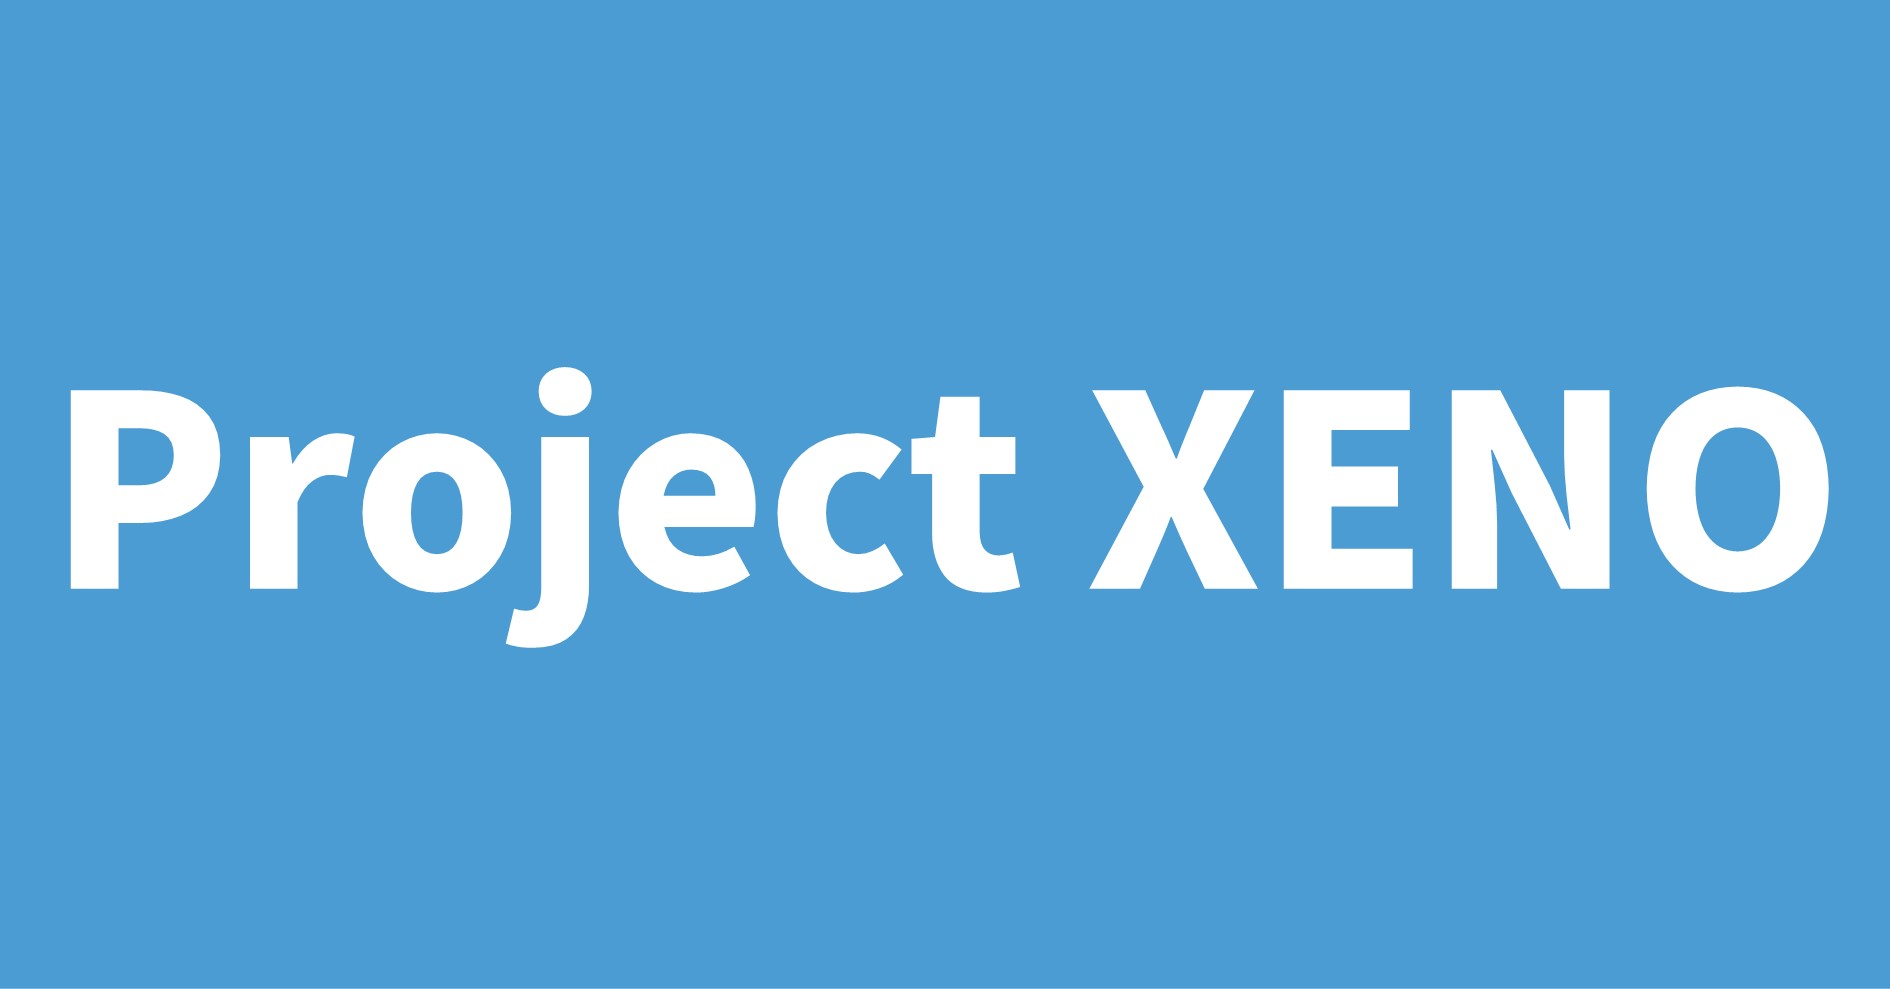 Project XENO